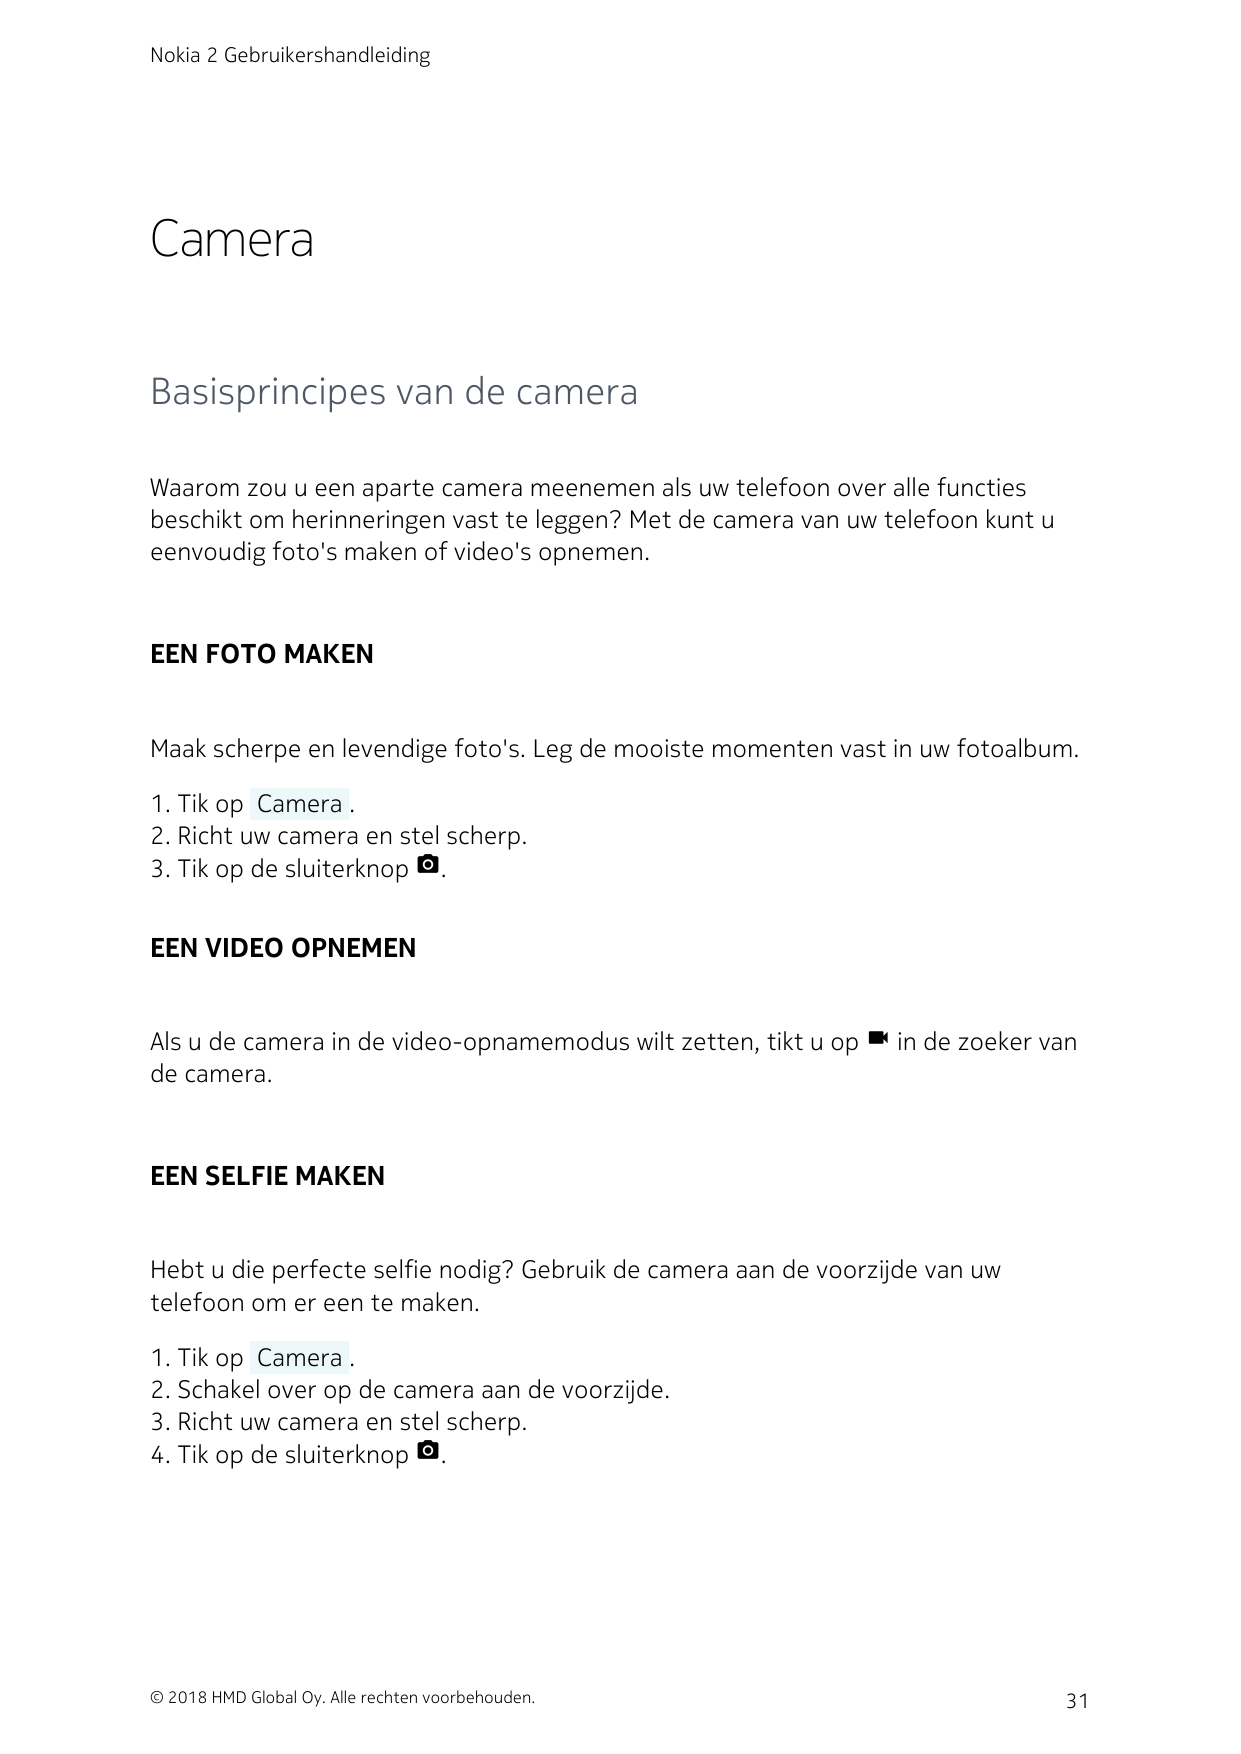 Nokia 2 GebruikershandleidingCameraBasisprincipes van de cameraWaarom zou u een aparte camera meenemen als uw telefoon over alle